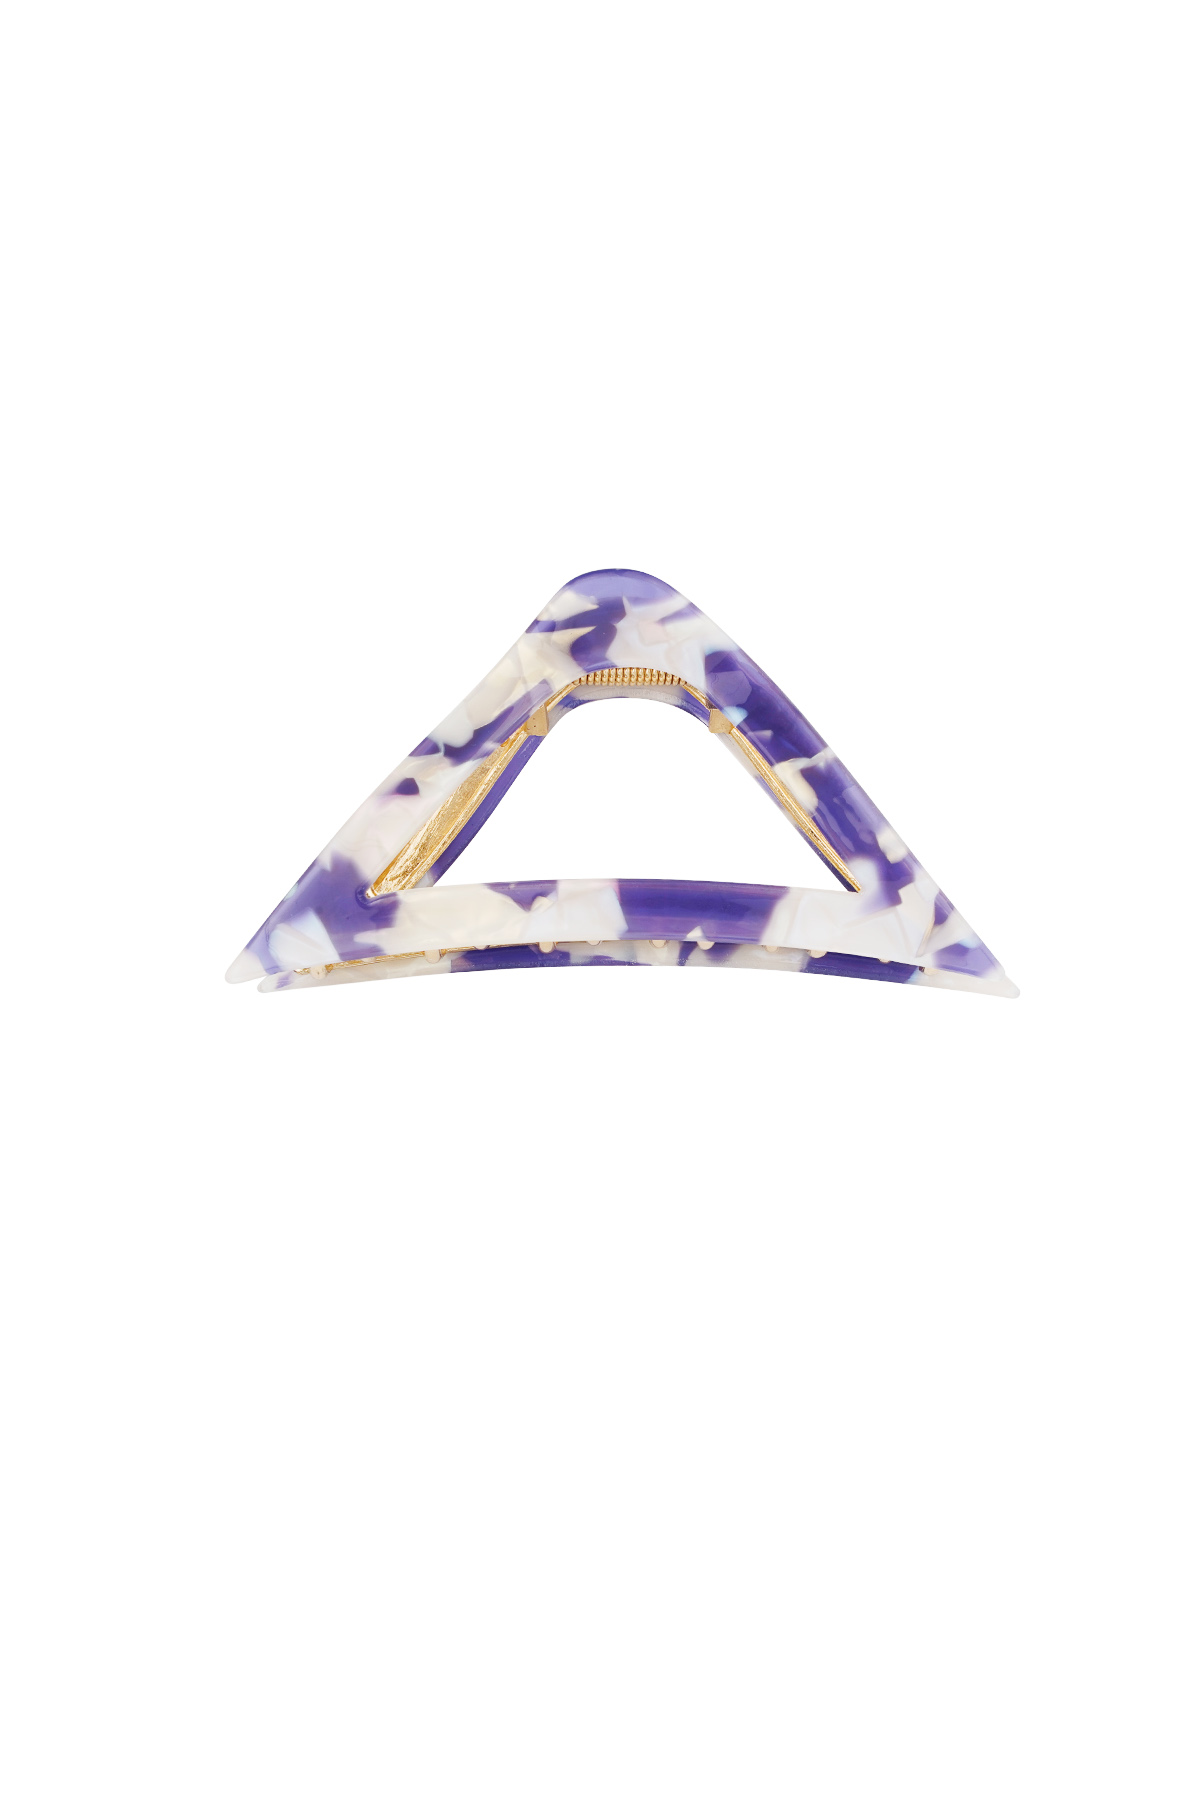 Fermaglio per capelli triangolare in marmo - viola h5 